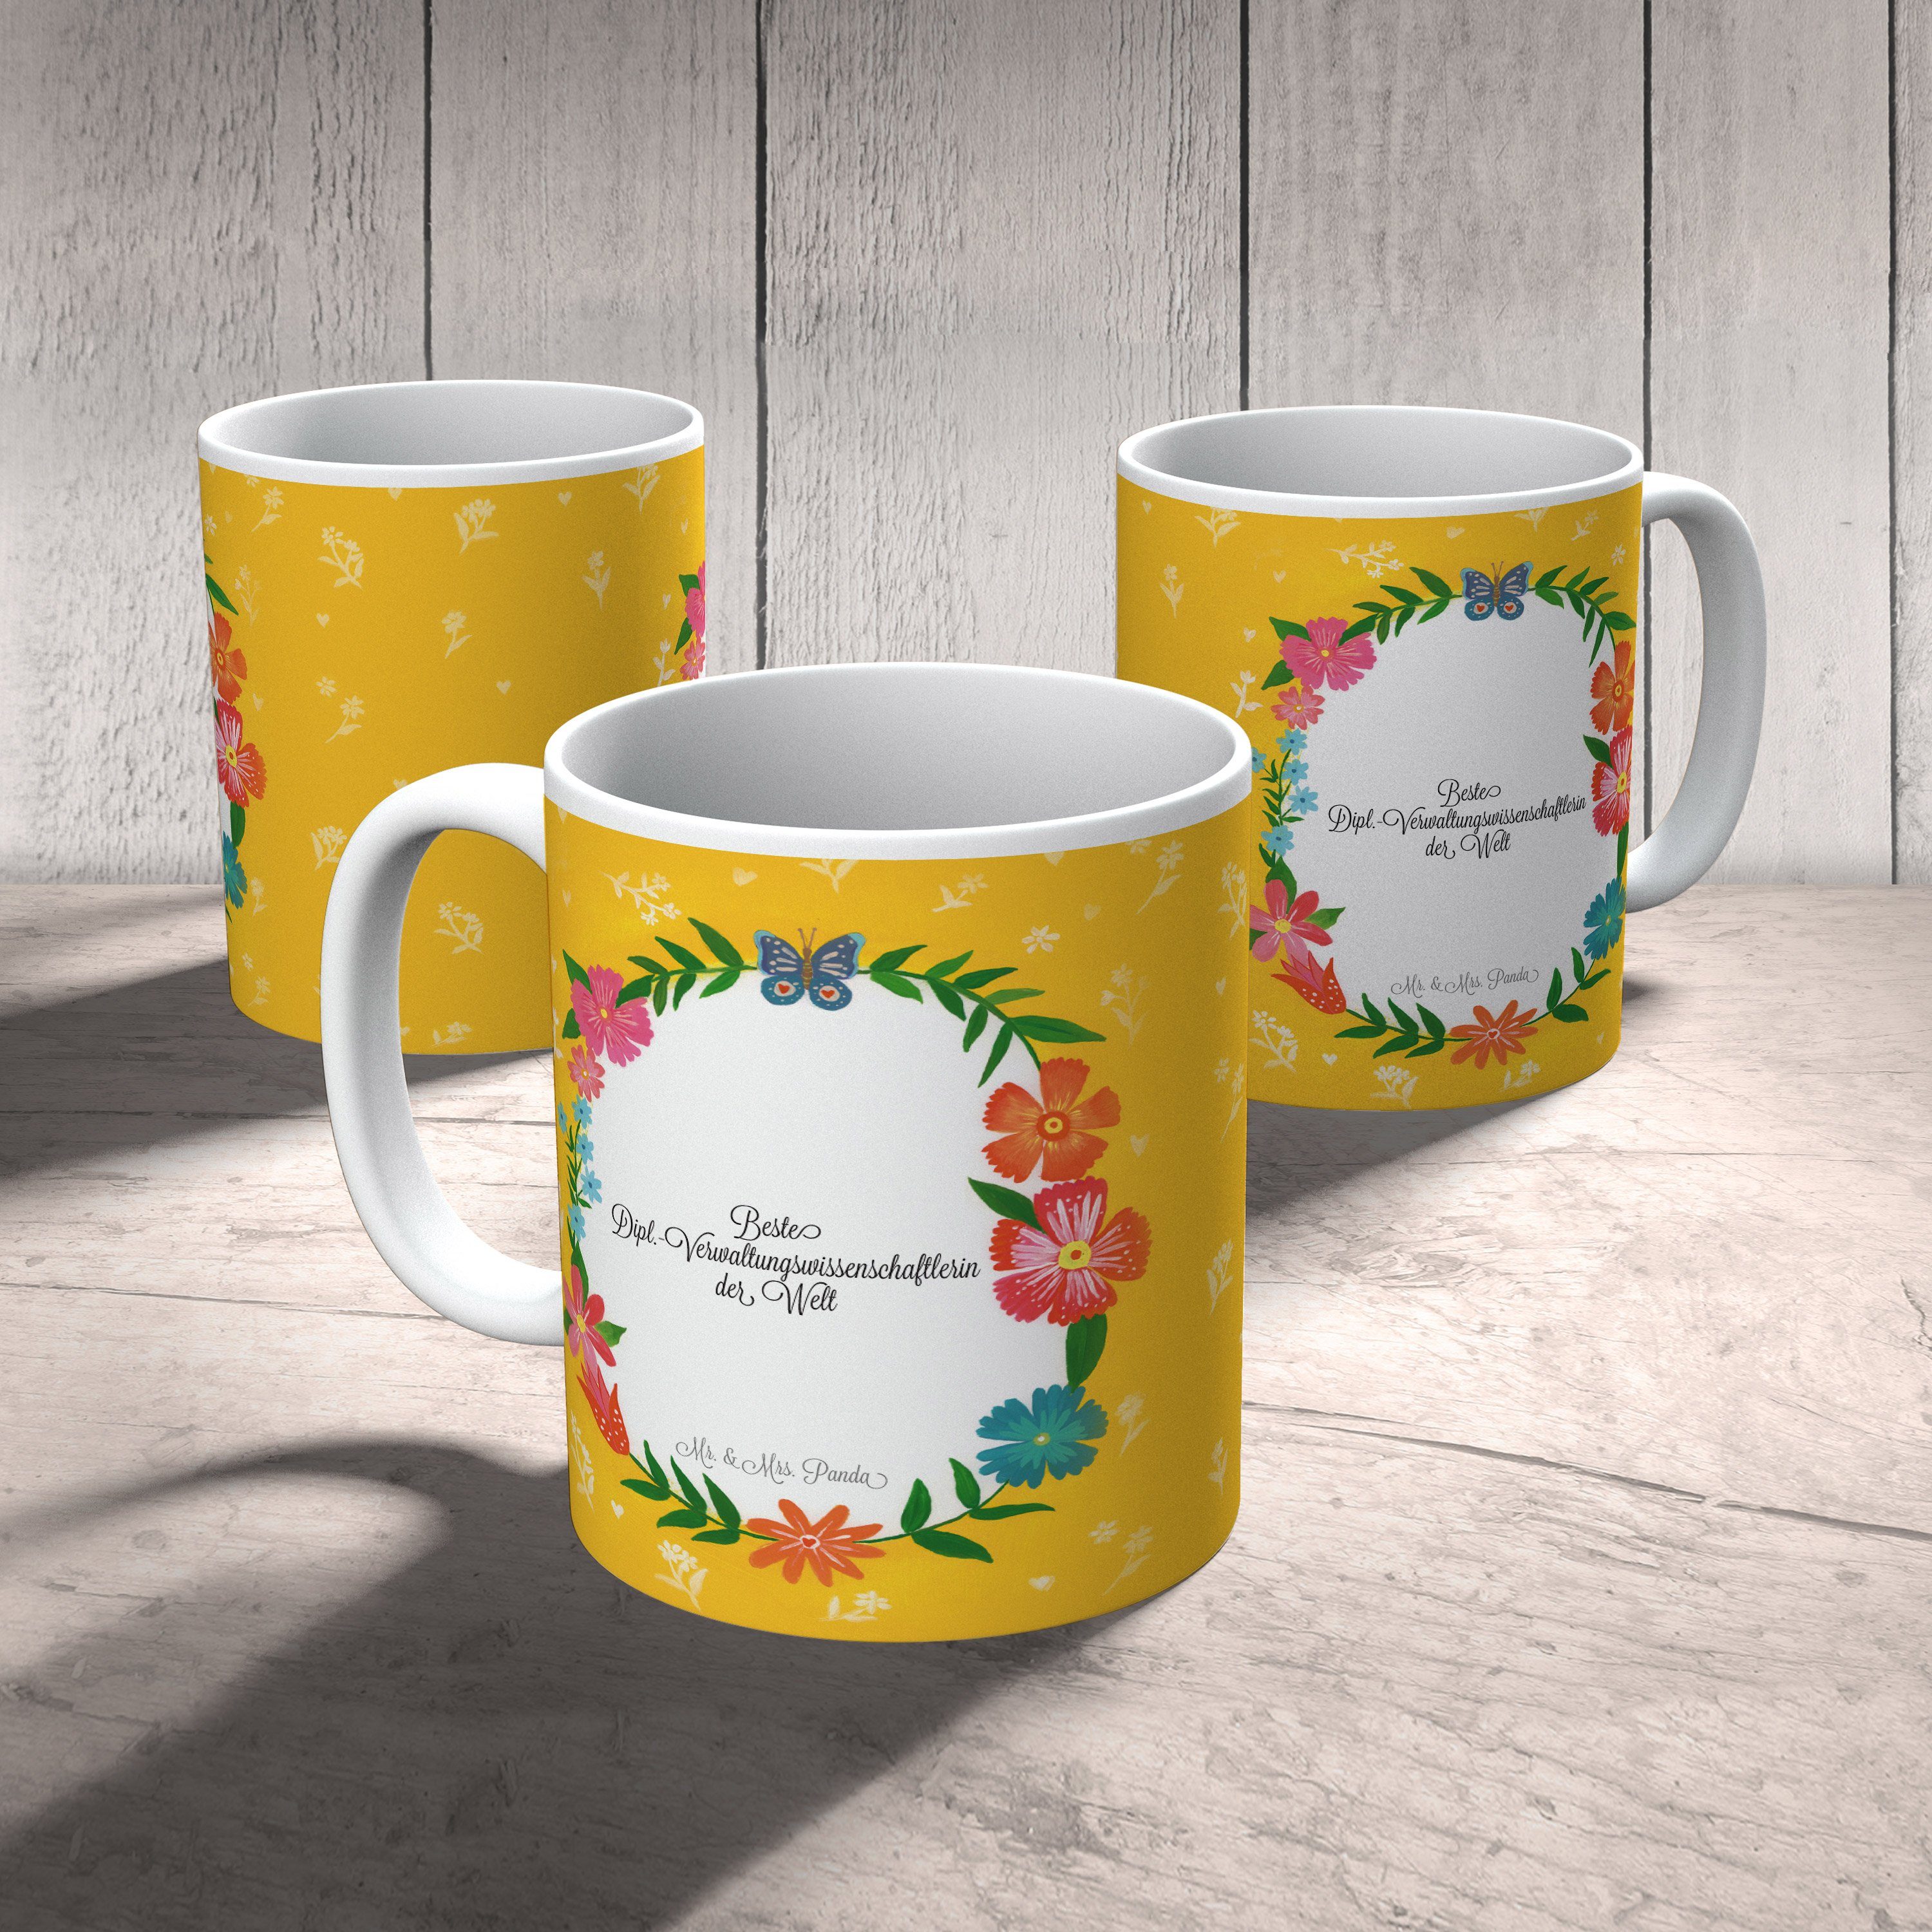 Keramik Geschenk, Tasse Mrs. Mr. - & Panda Kaffeebecher, Dipl.-Verwaltungswissenschaftlerin Schenken,